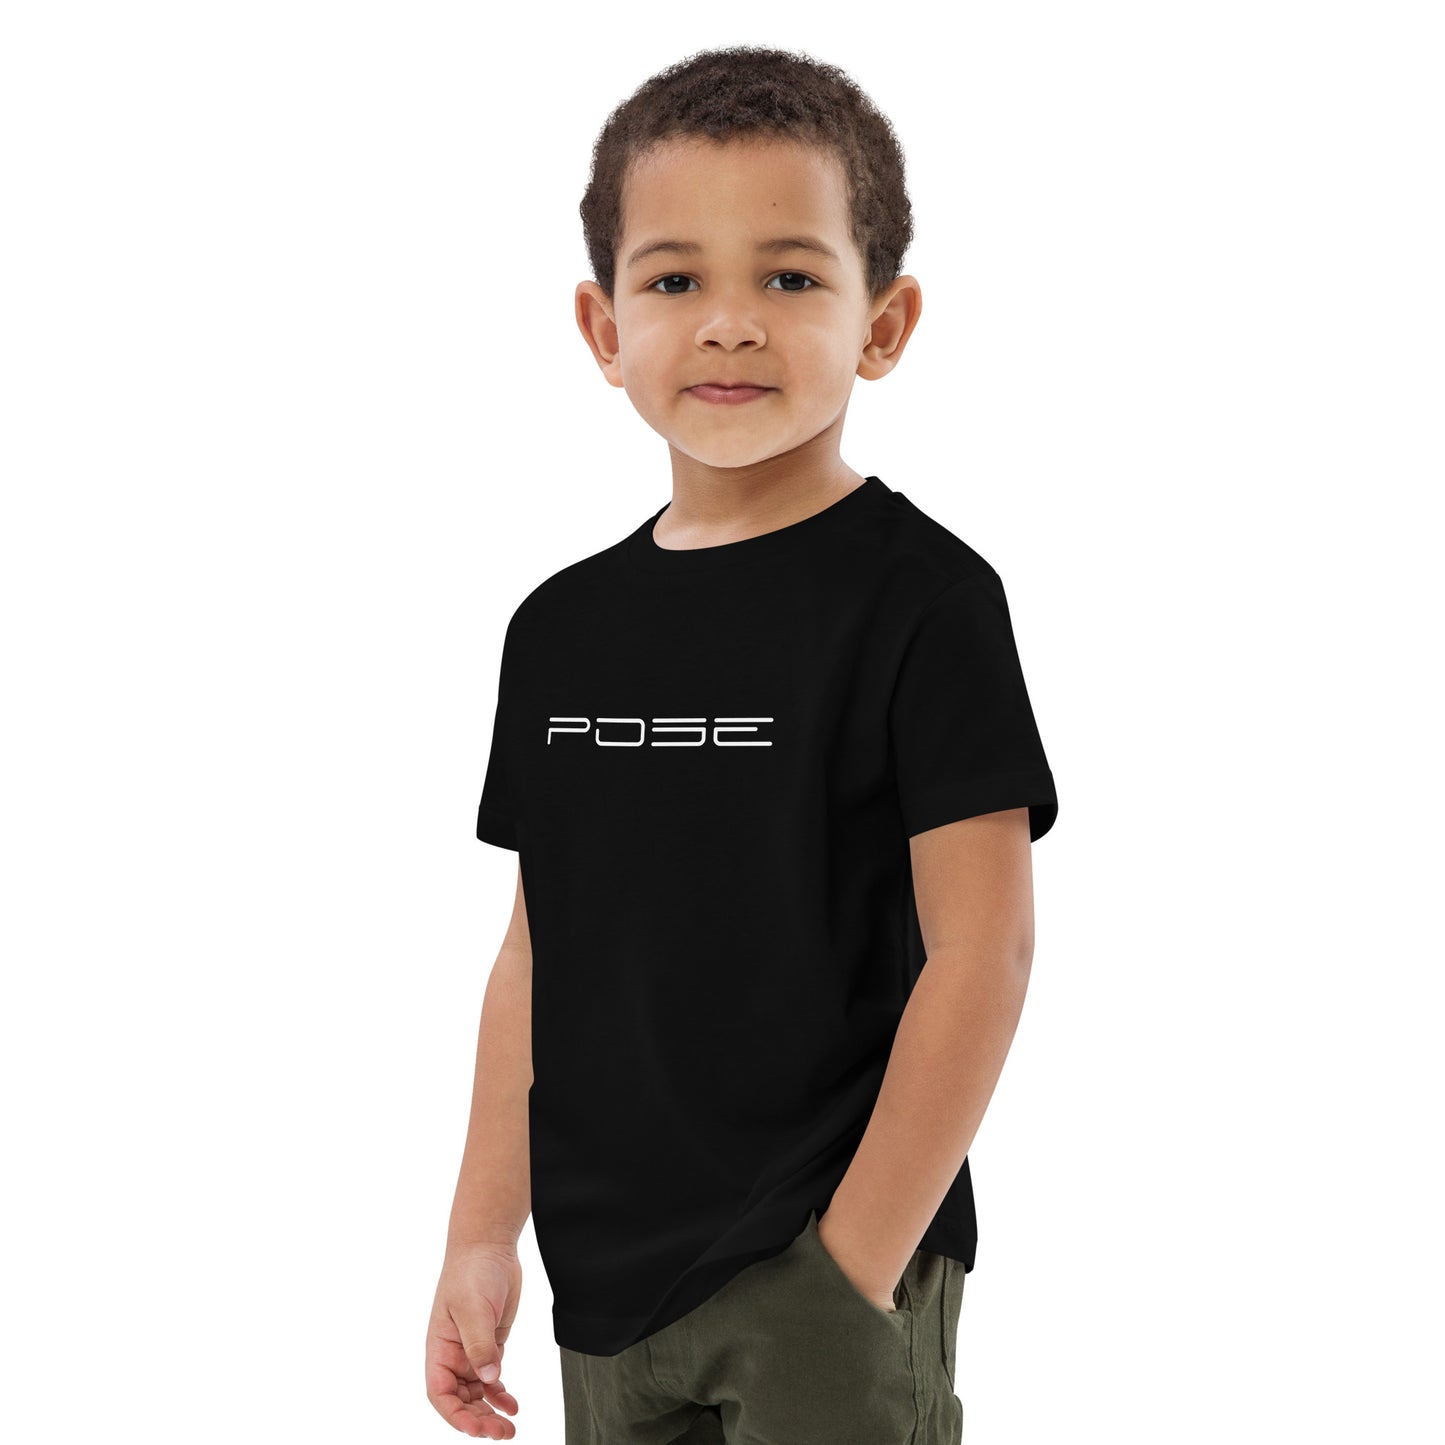 POSE Kids Shirt